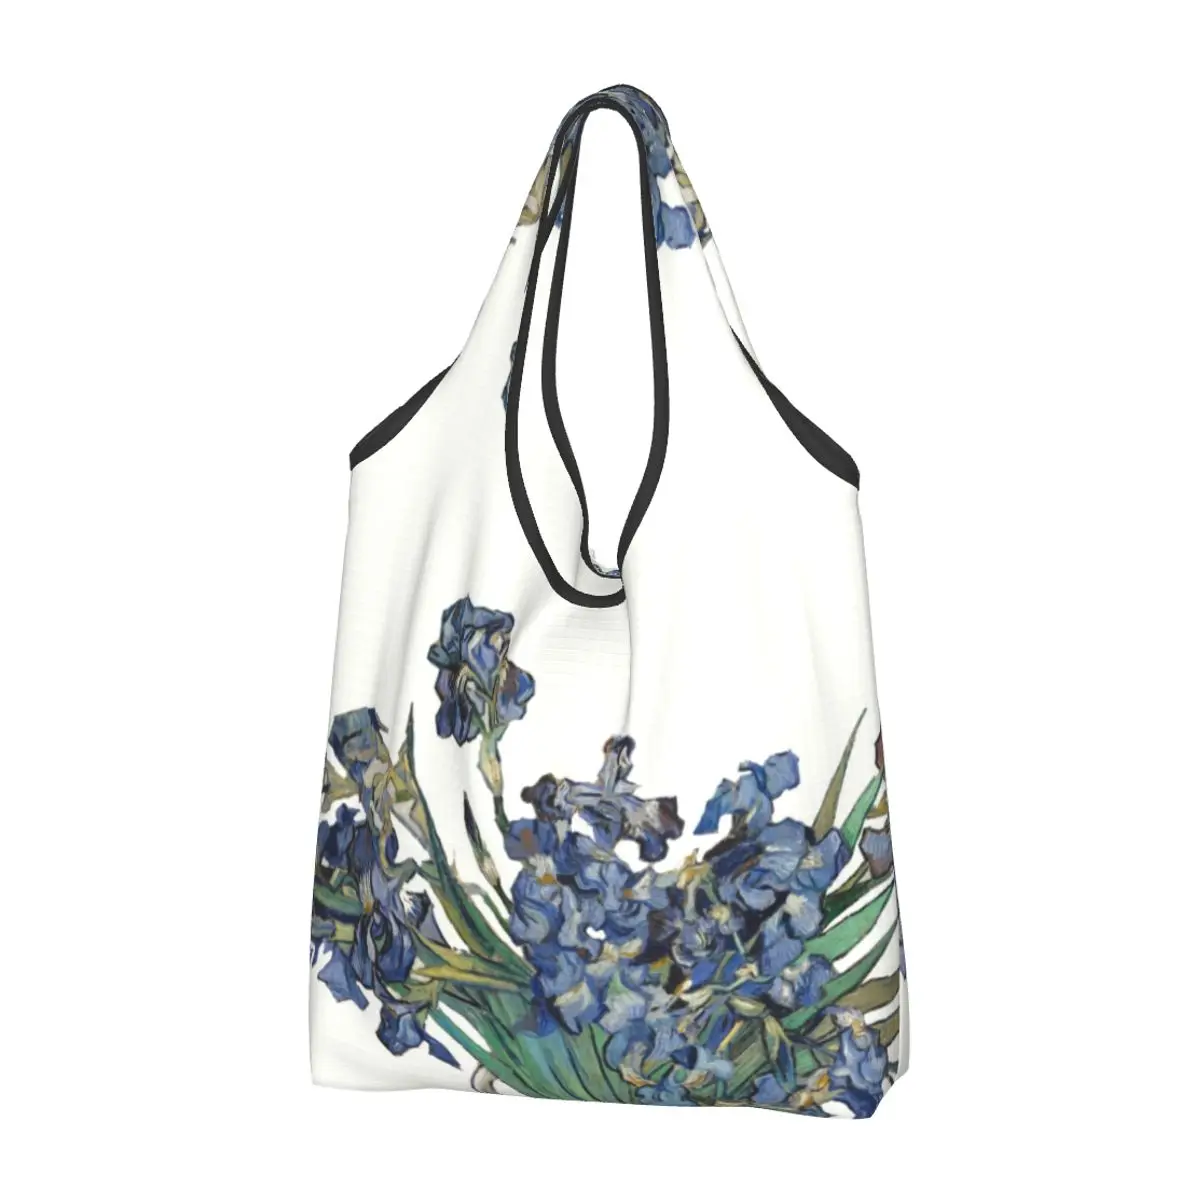 

Сумка для покупок с картиной Винсента Ван Гога, сумочка для покупки продуктов, тоут на плечо, вместительный портативный чемоданчик с цветочным рисунком